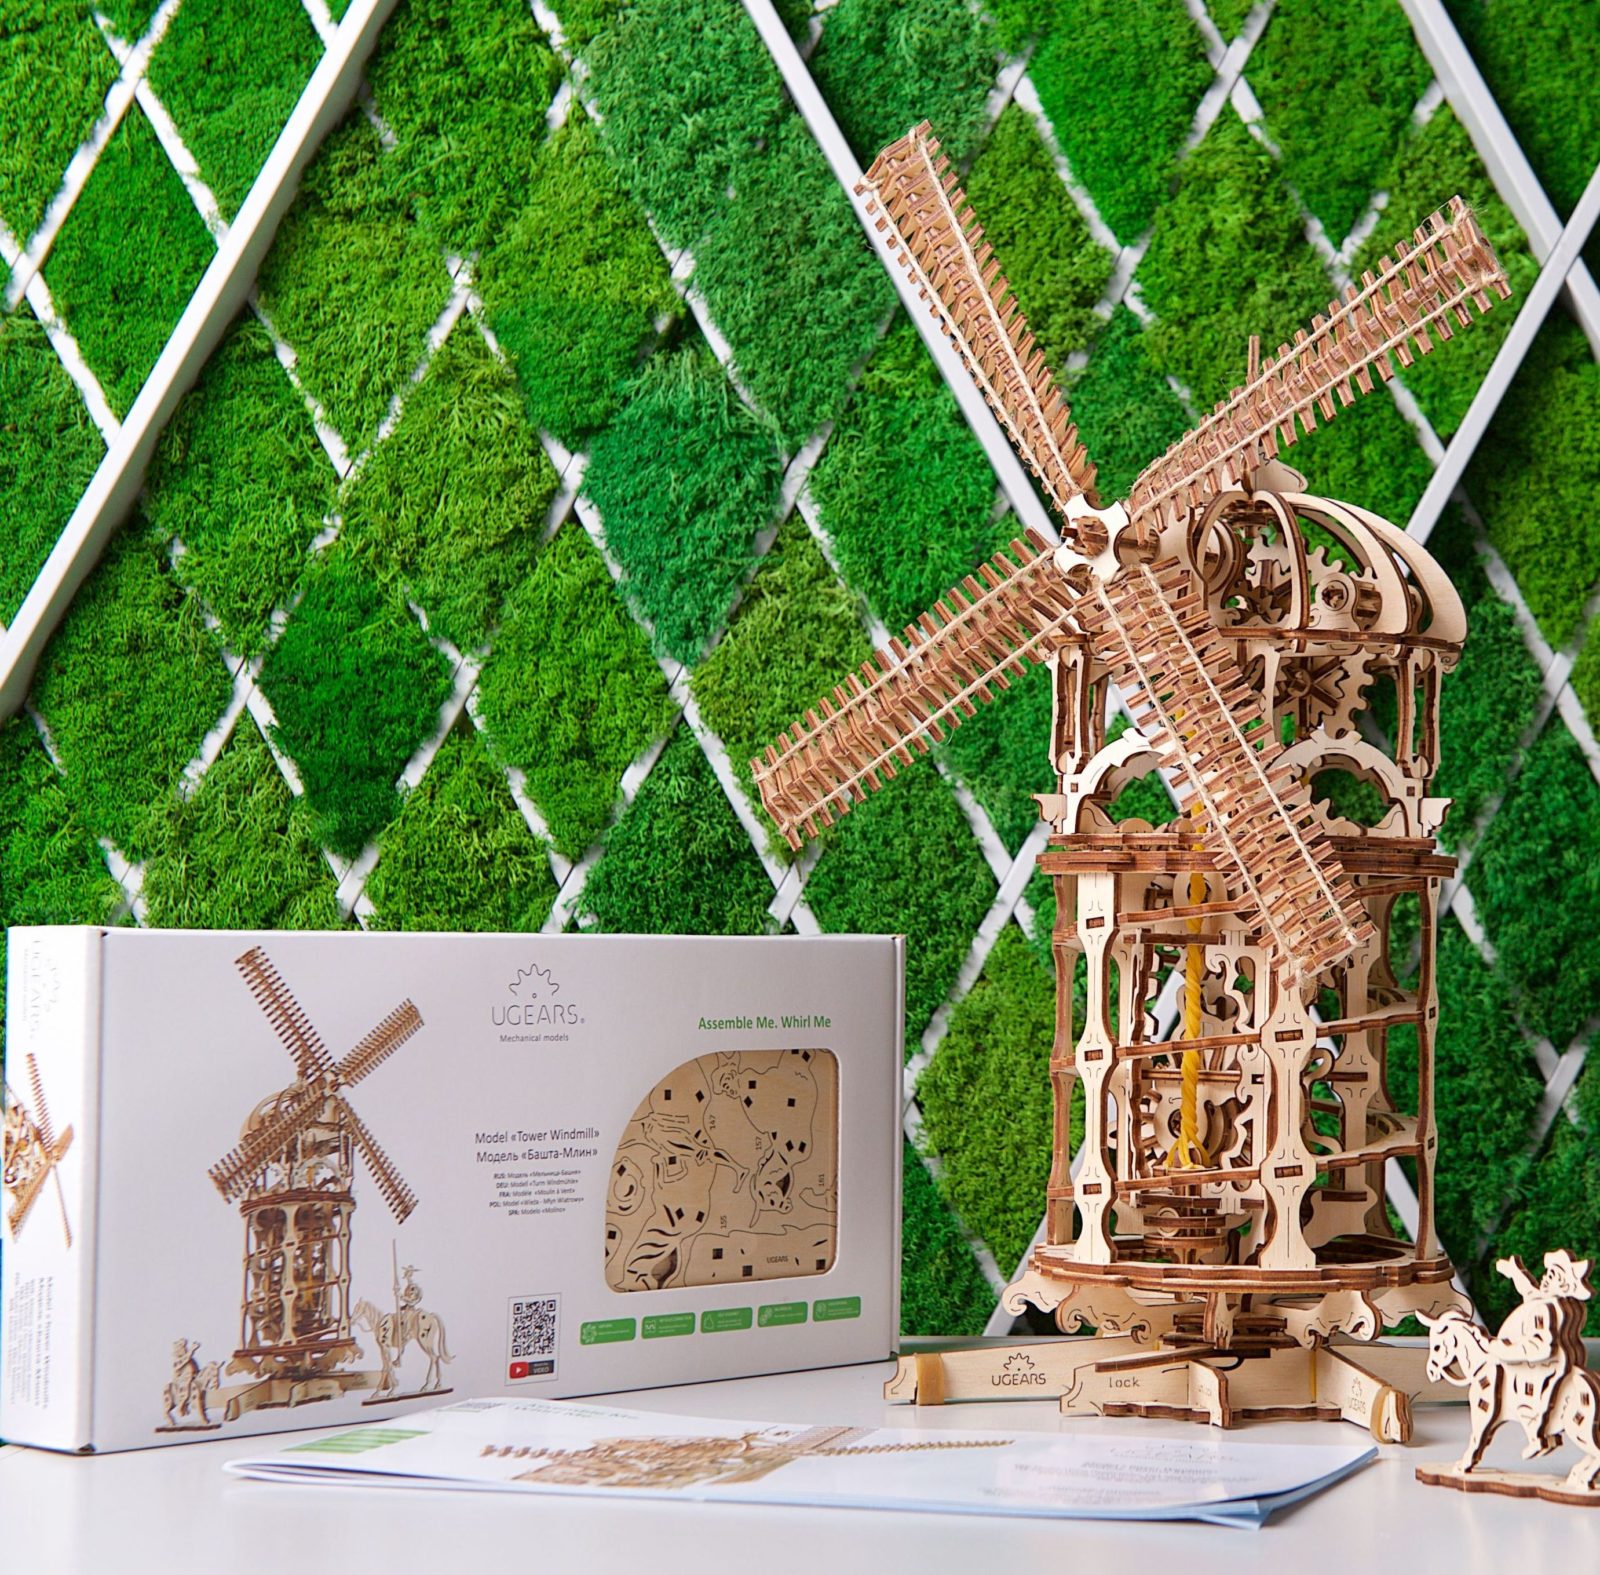 Puzzle 3D - Moulin à vent - Puzzle 3D - Moulin à vent des Pays-Bas - 61  pièces 